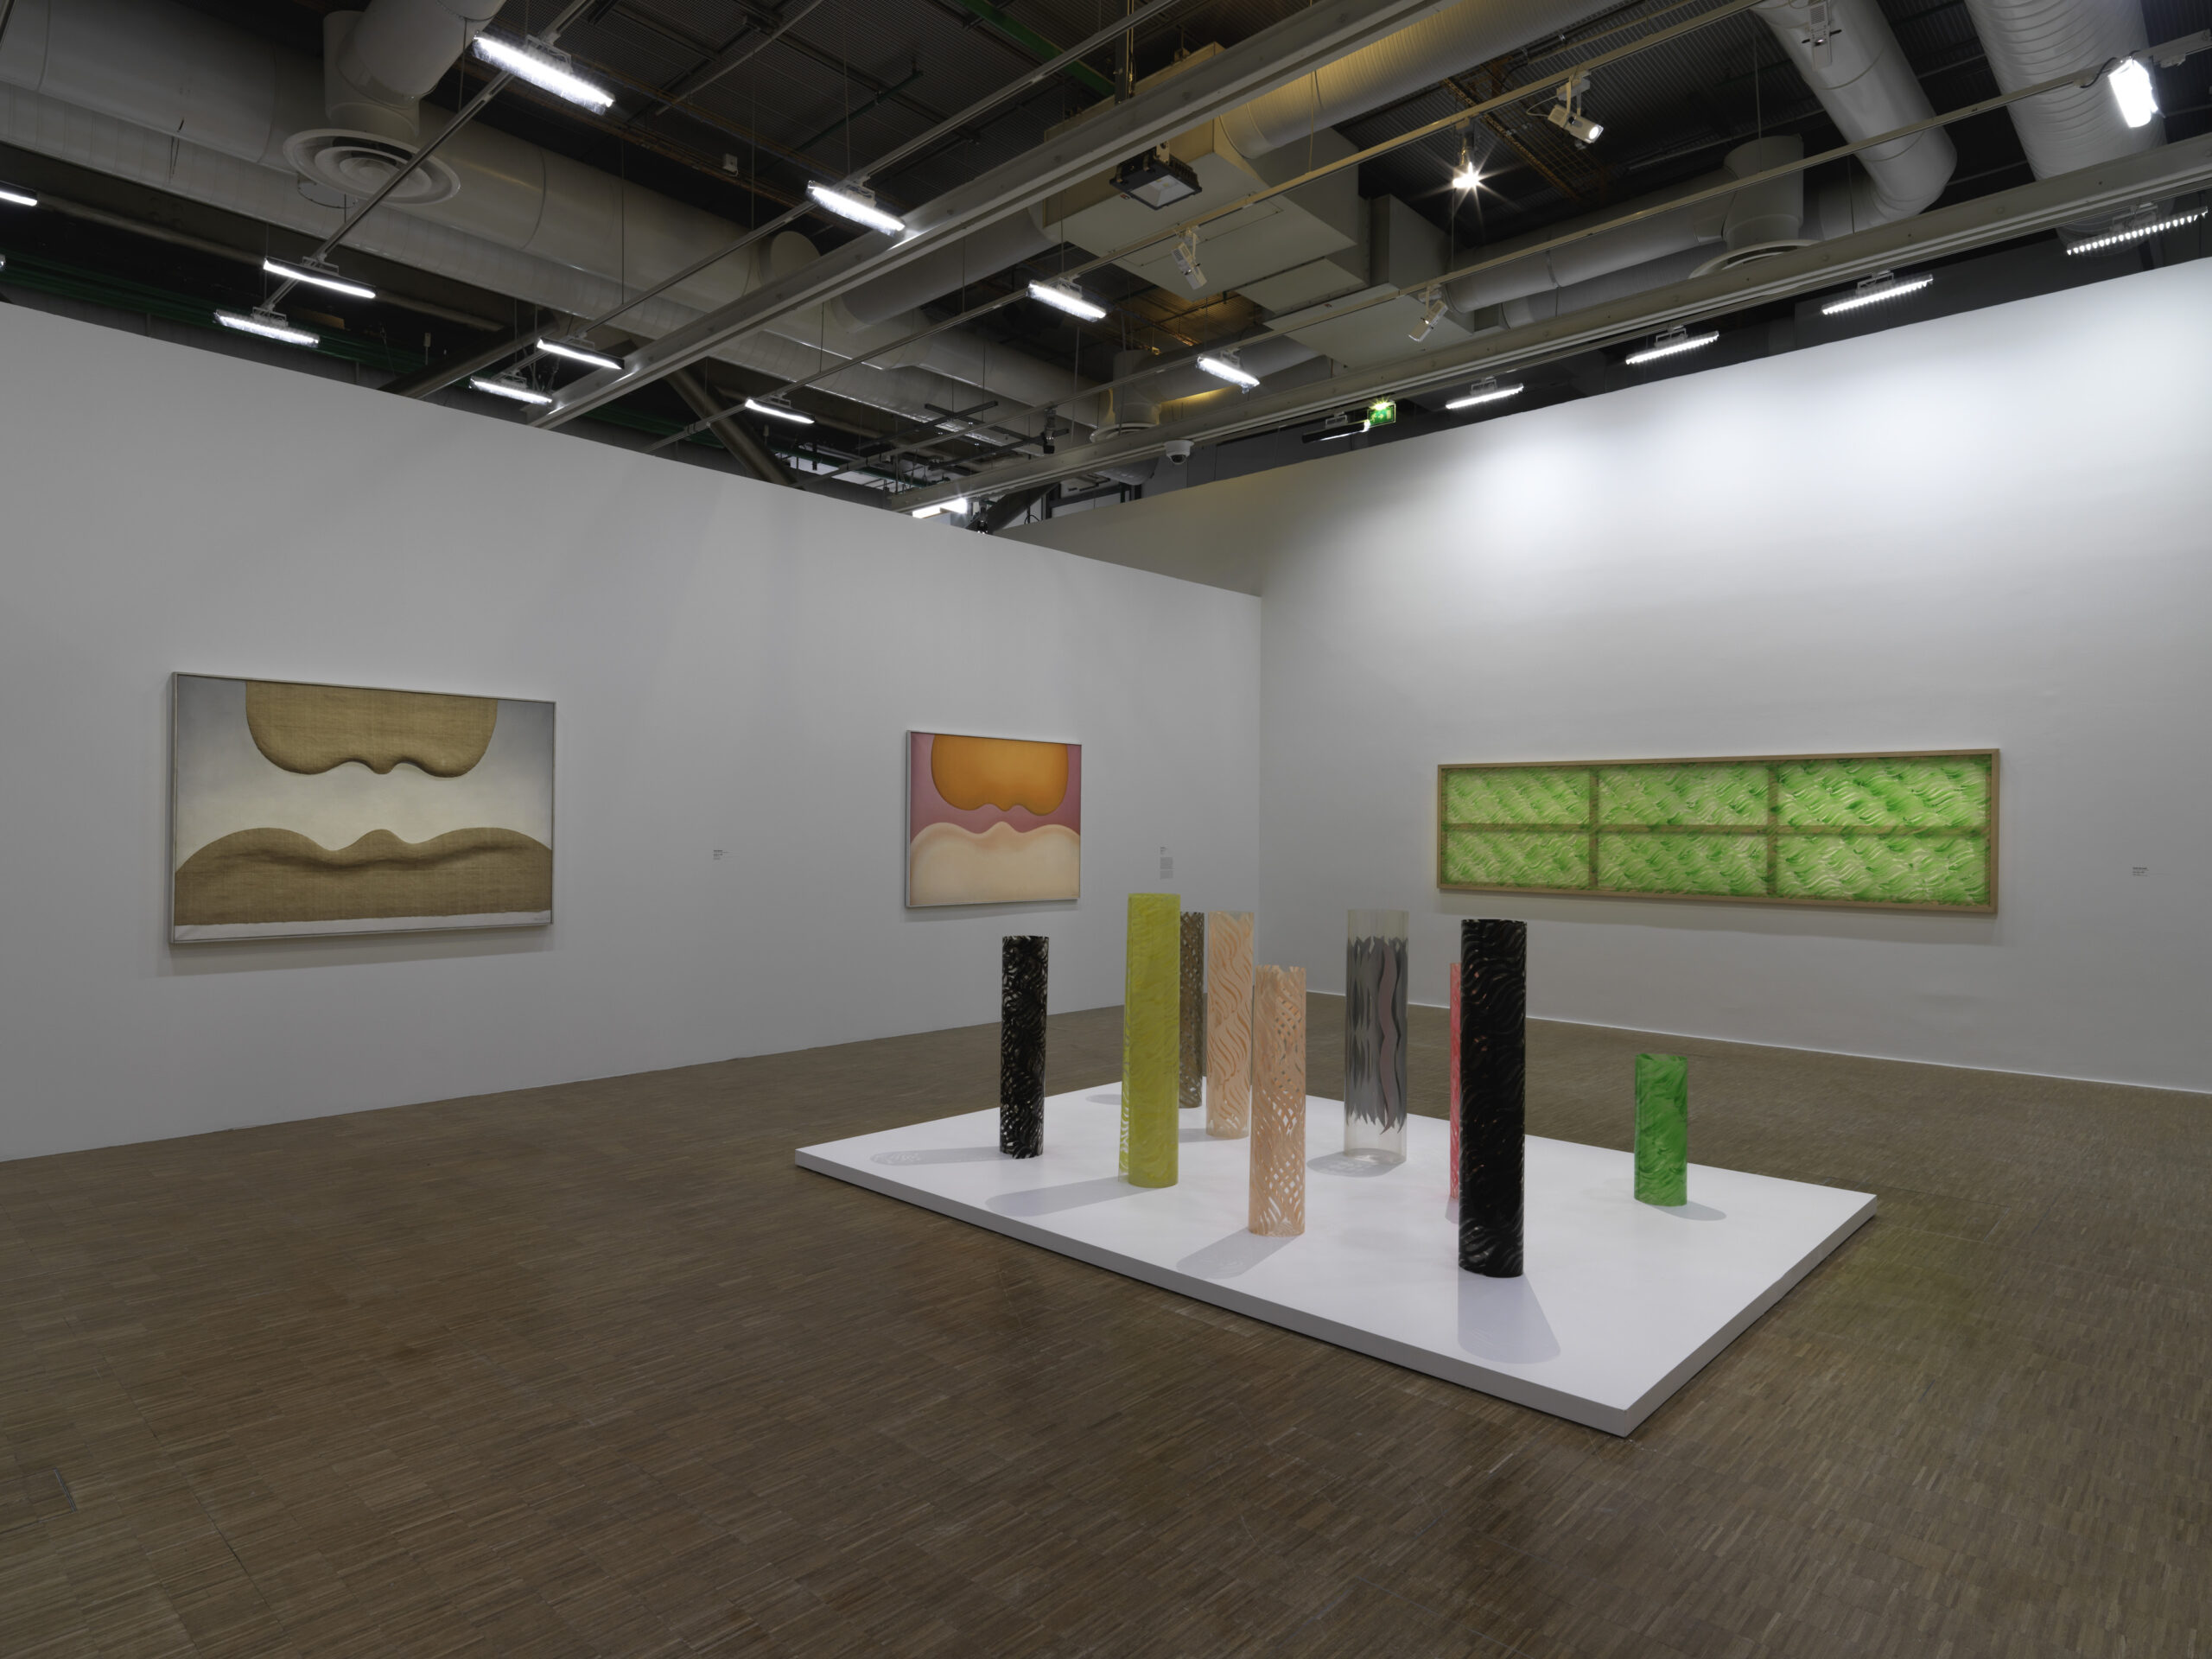 Sala della mostra “Elles font l’abstraction” curata da Christine Macel